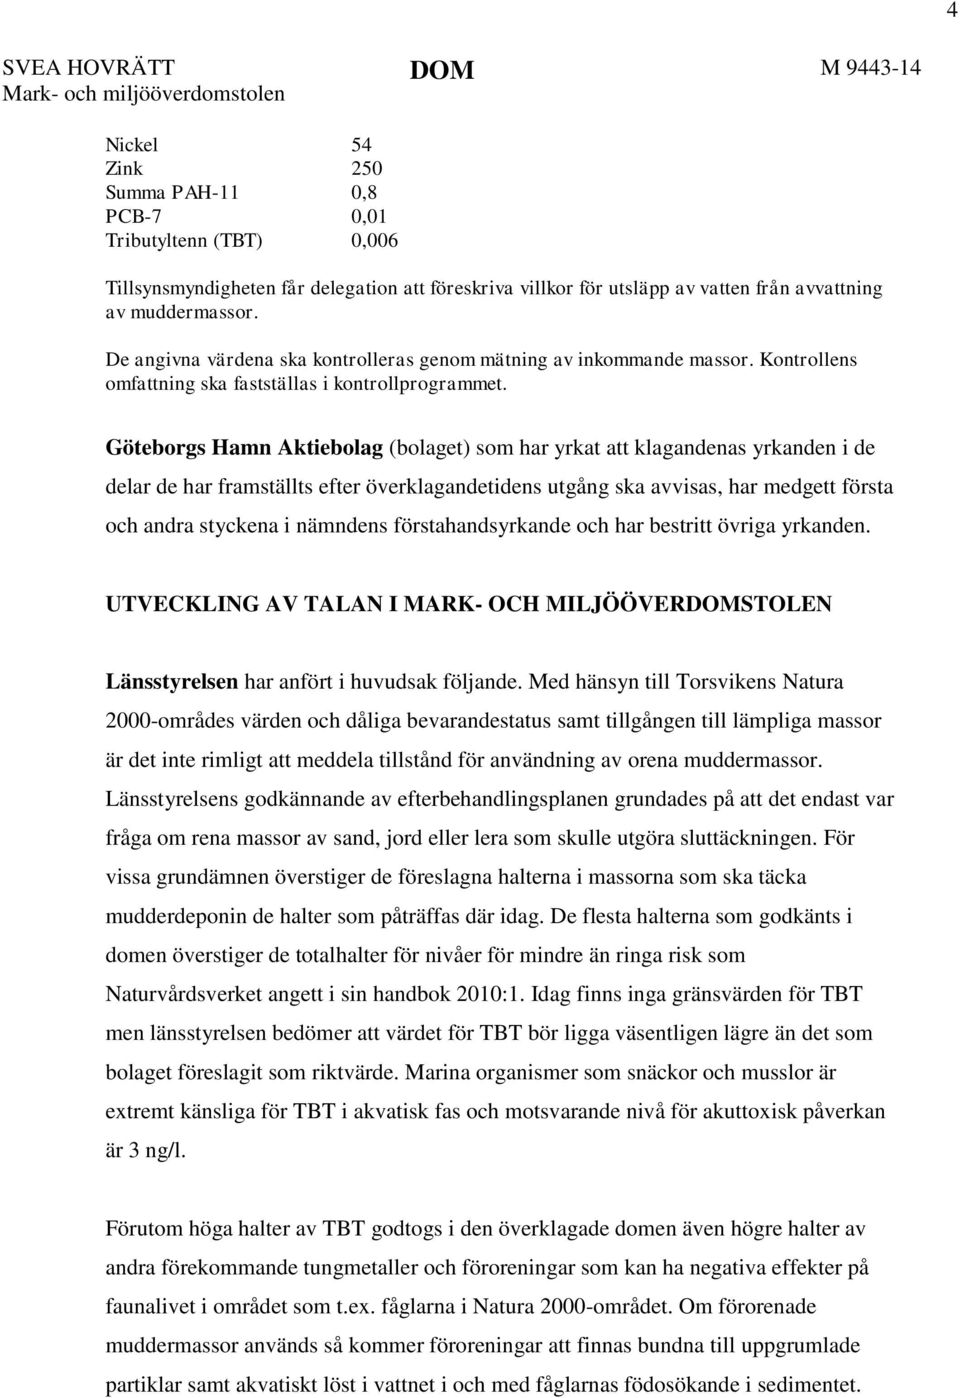 Göteborgs Hamn Aktiebolag (bolaget) som har yrkat att klagandenas yrkanden i de delar de har framställts efter överklagandetidens utgång ska avvisas, har medgett första och andra styckena i nämndens